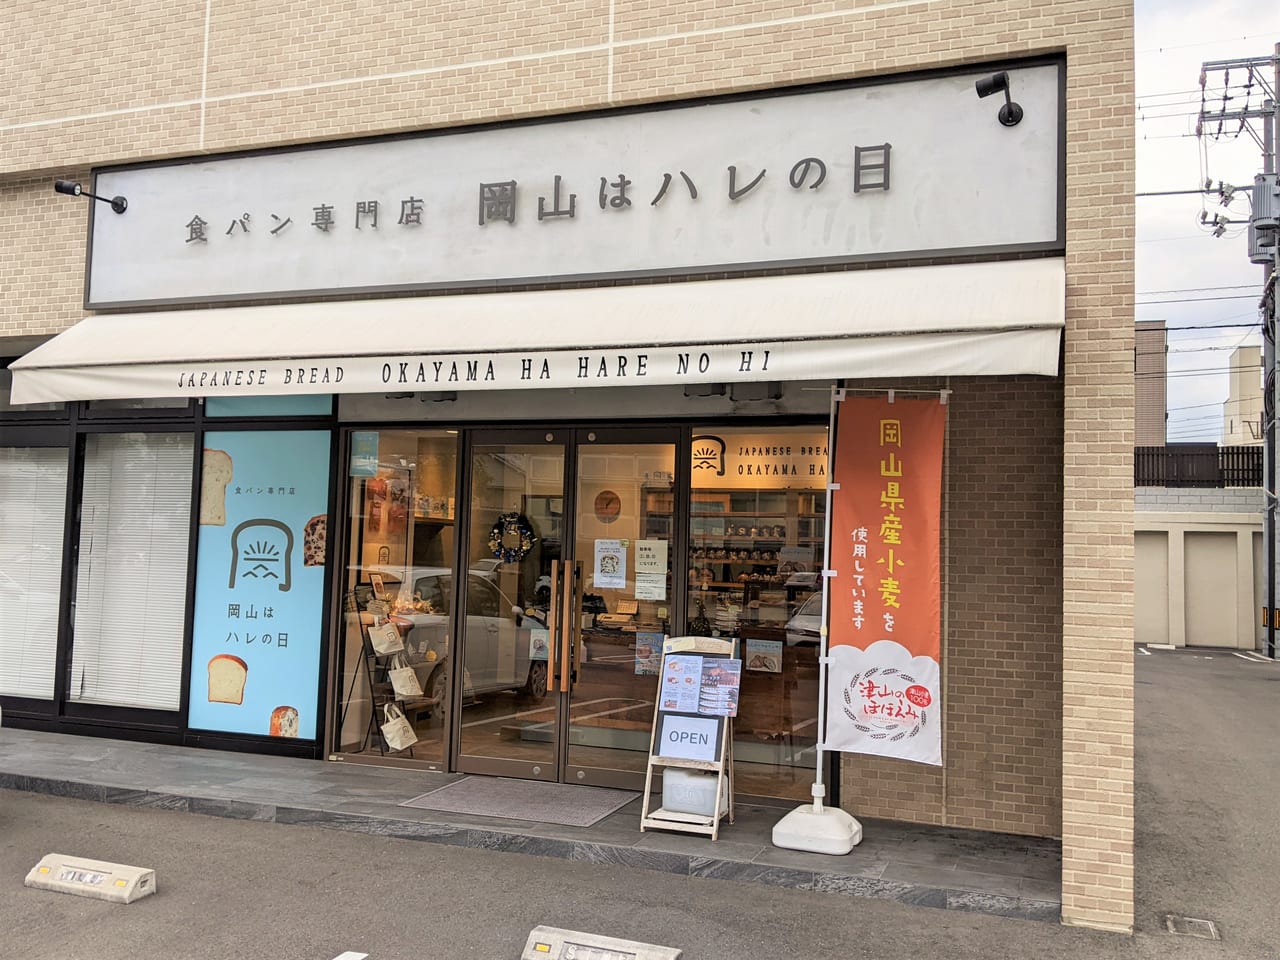 「岡山はハレの日 本店」の外観